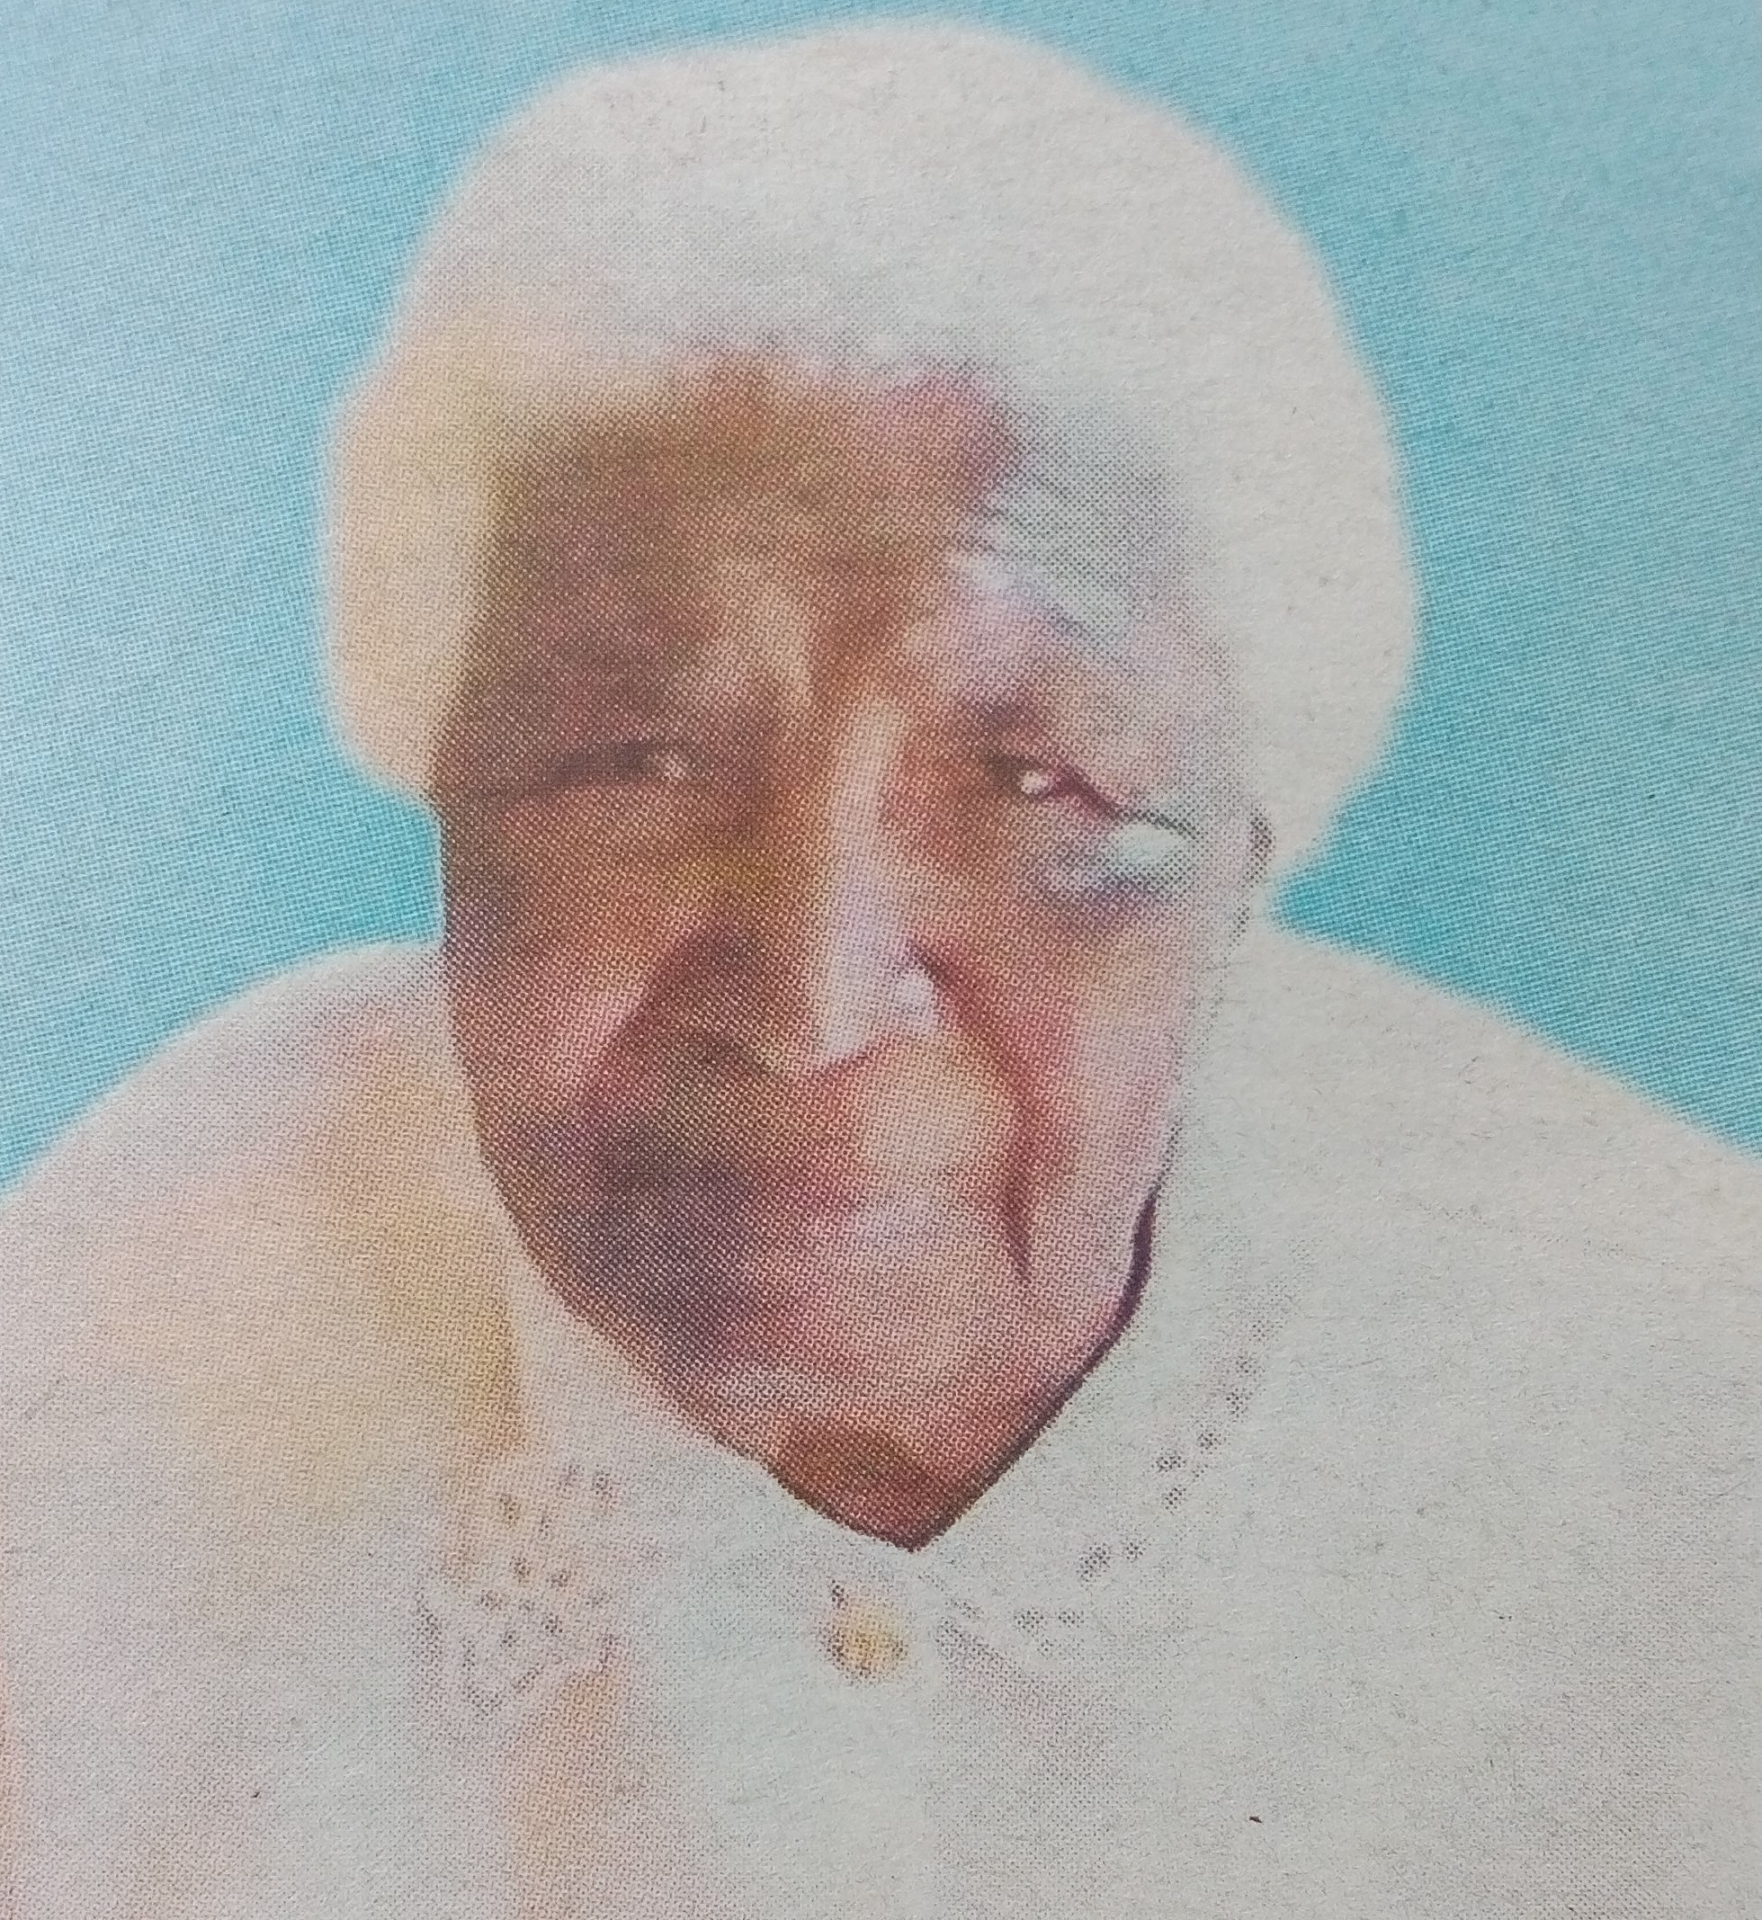 Obituary Image of Eunice Wanjiku Muchugia